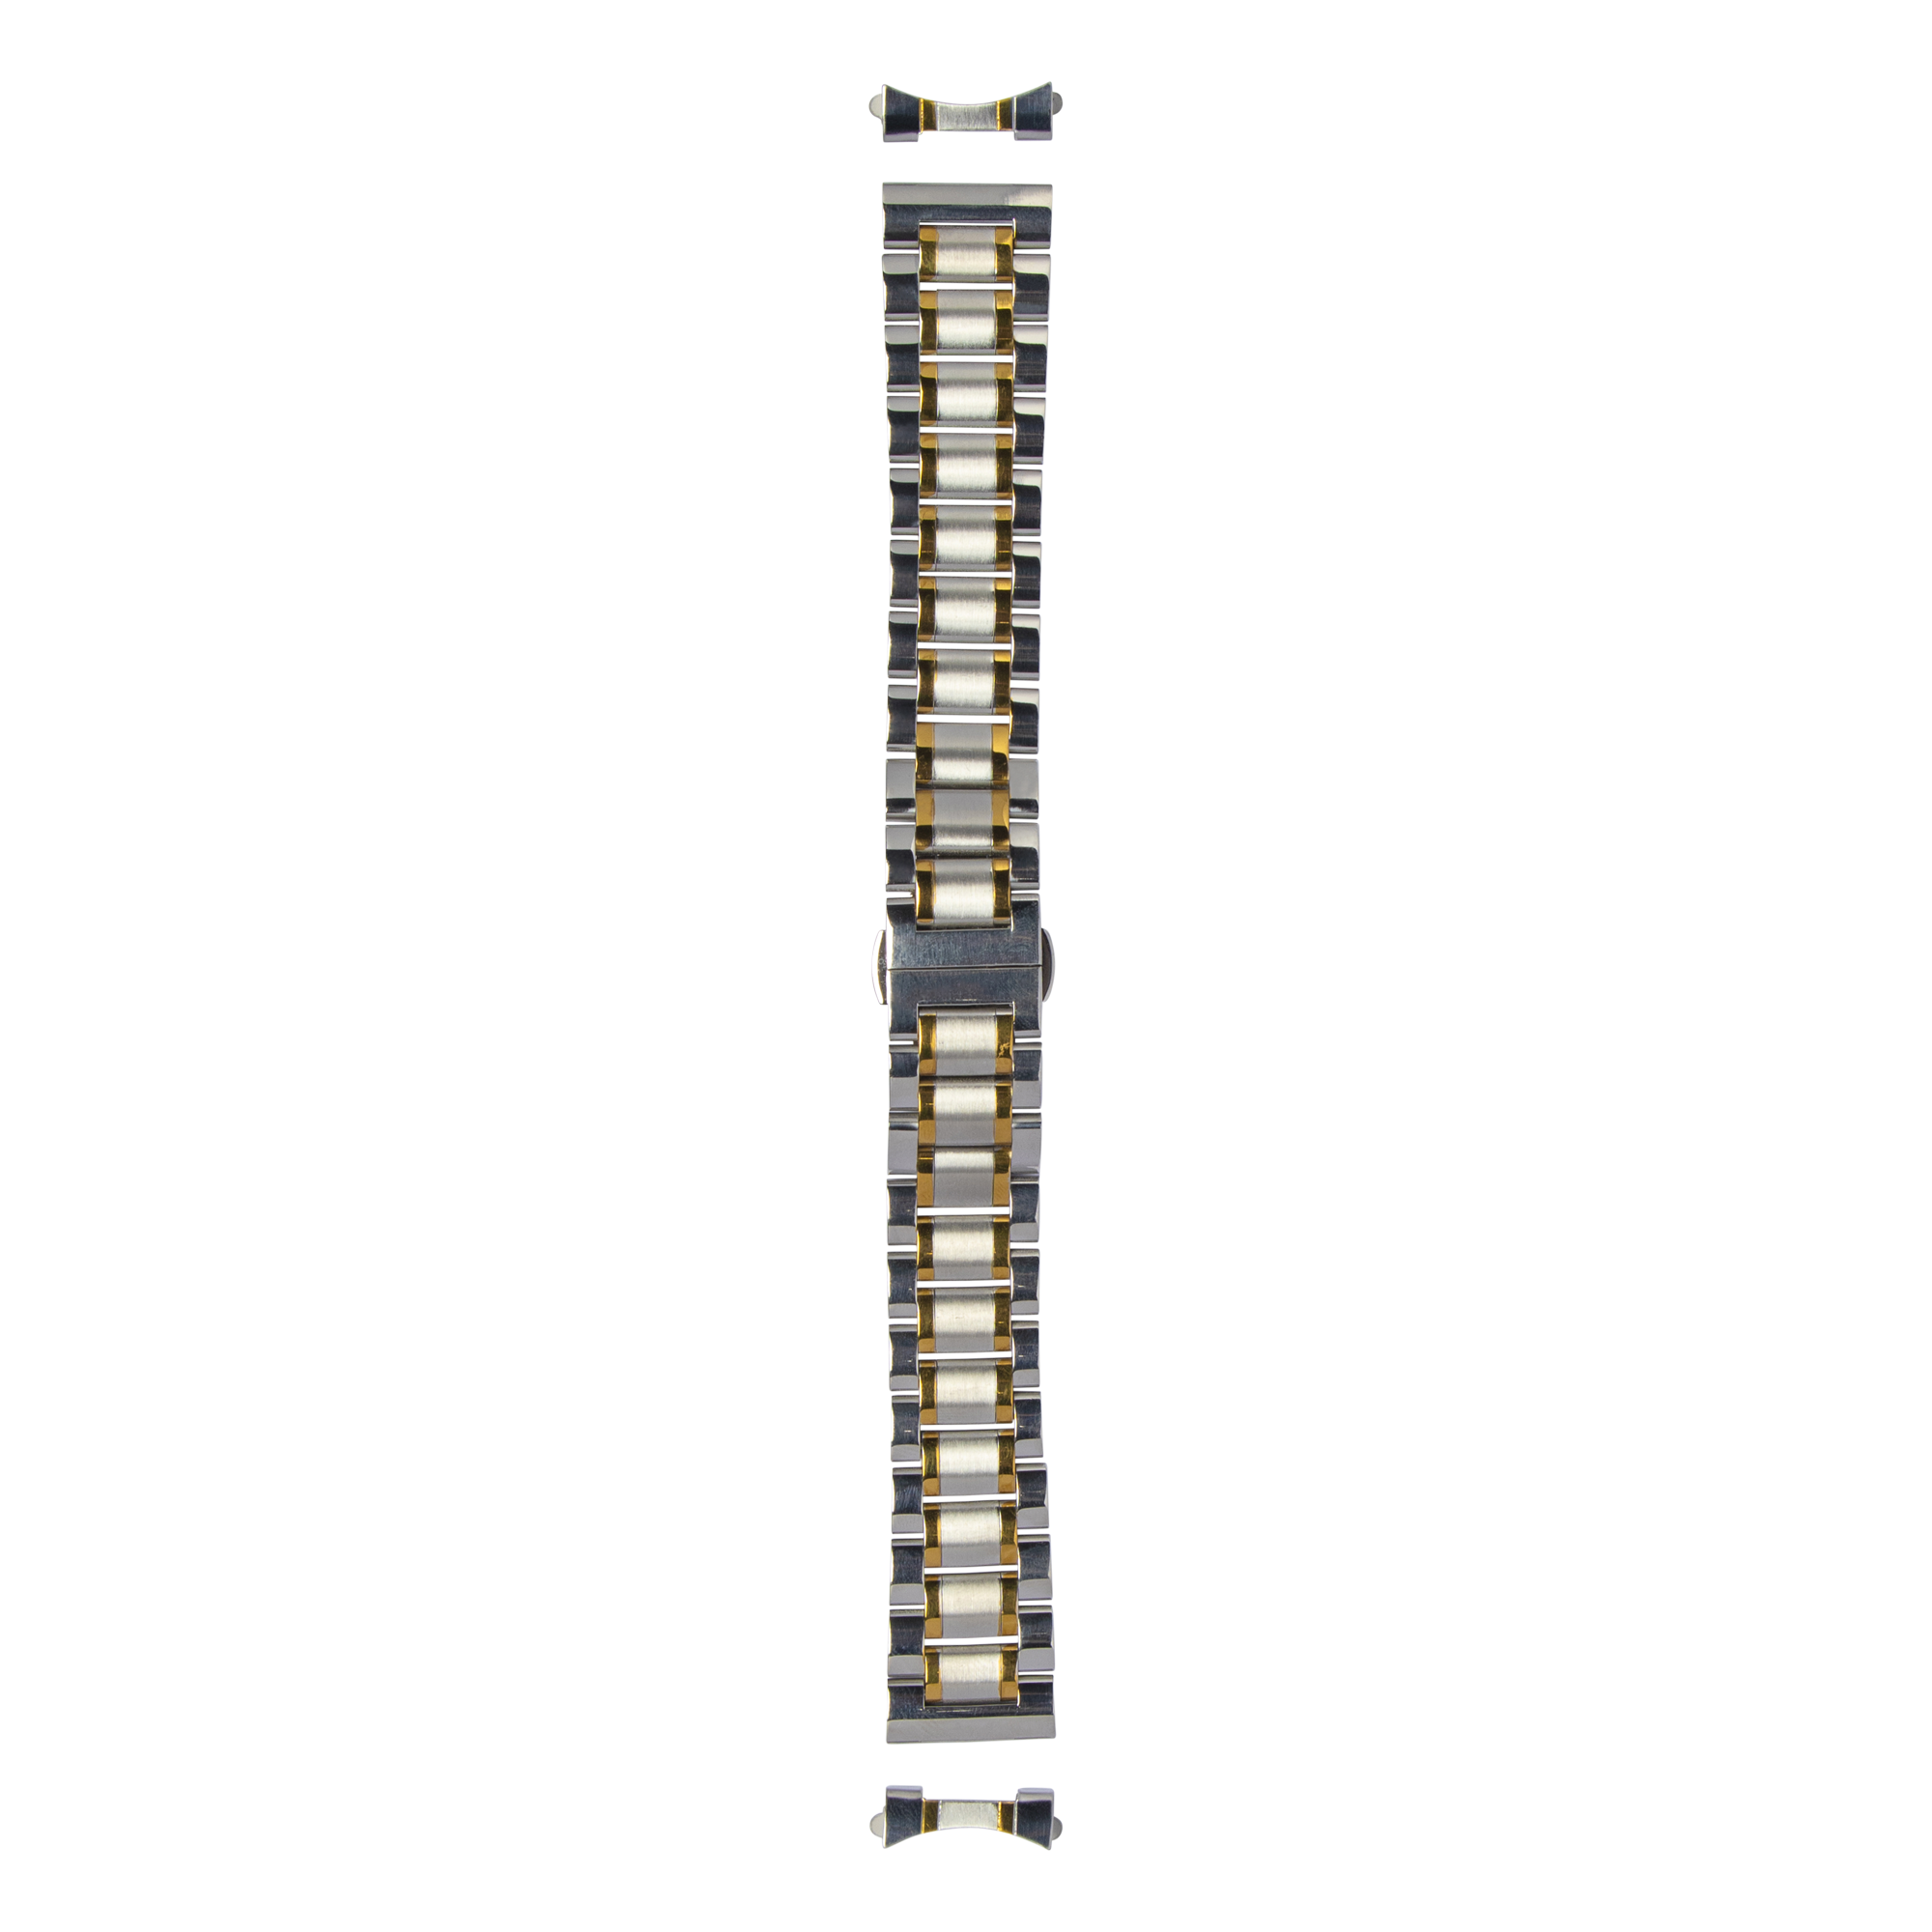 [Curved] Steel Bracelet - Silver/Gold